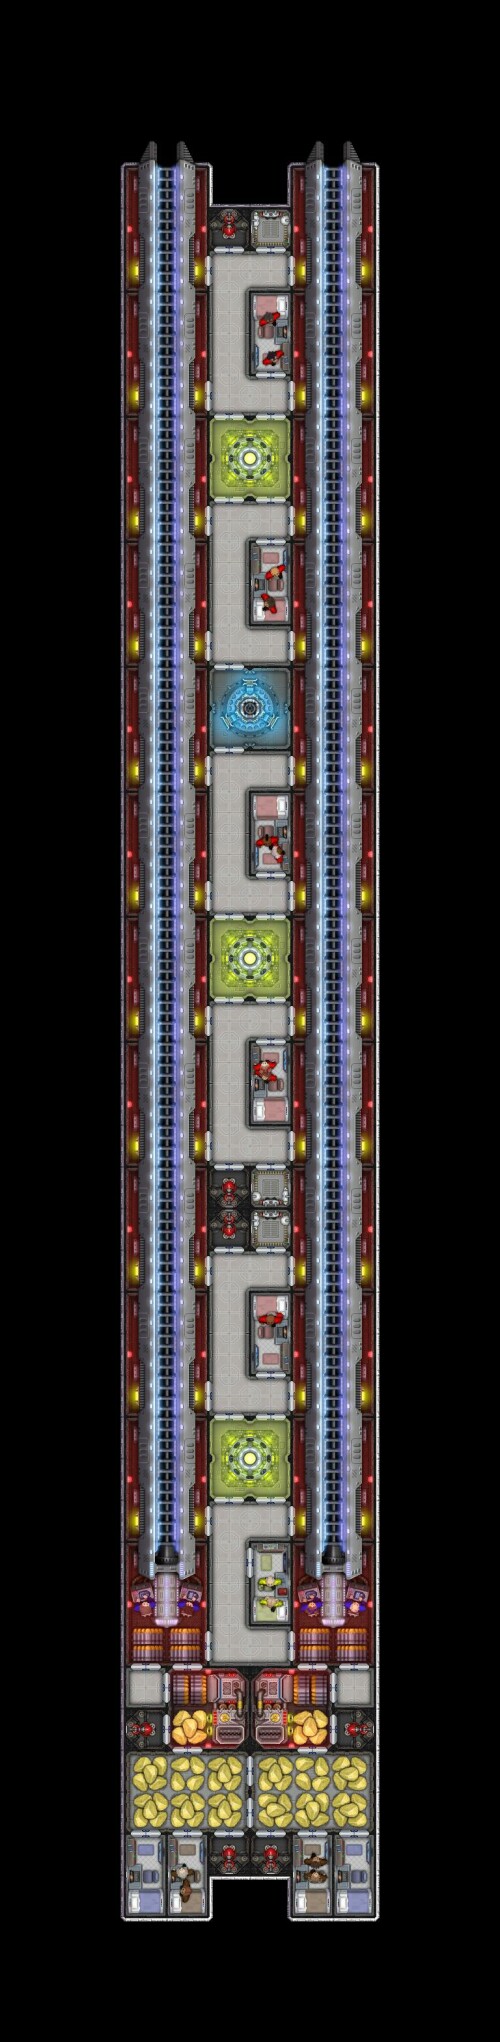 Rail-module-test-interior.jpg